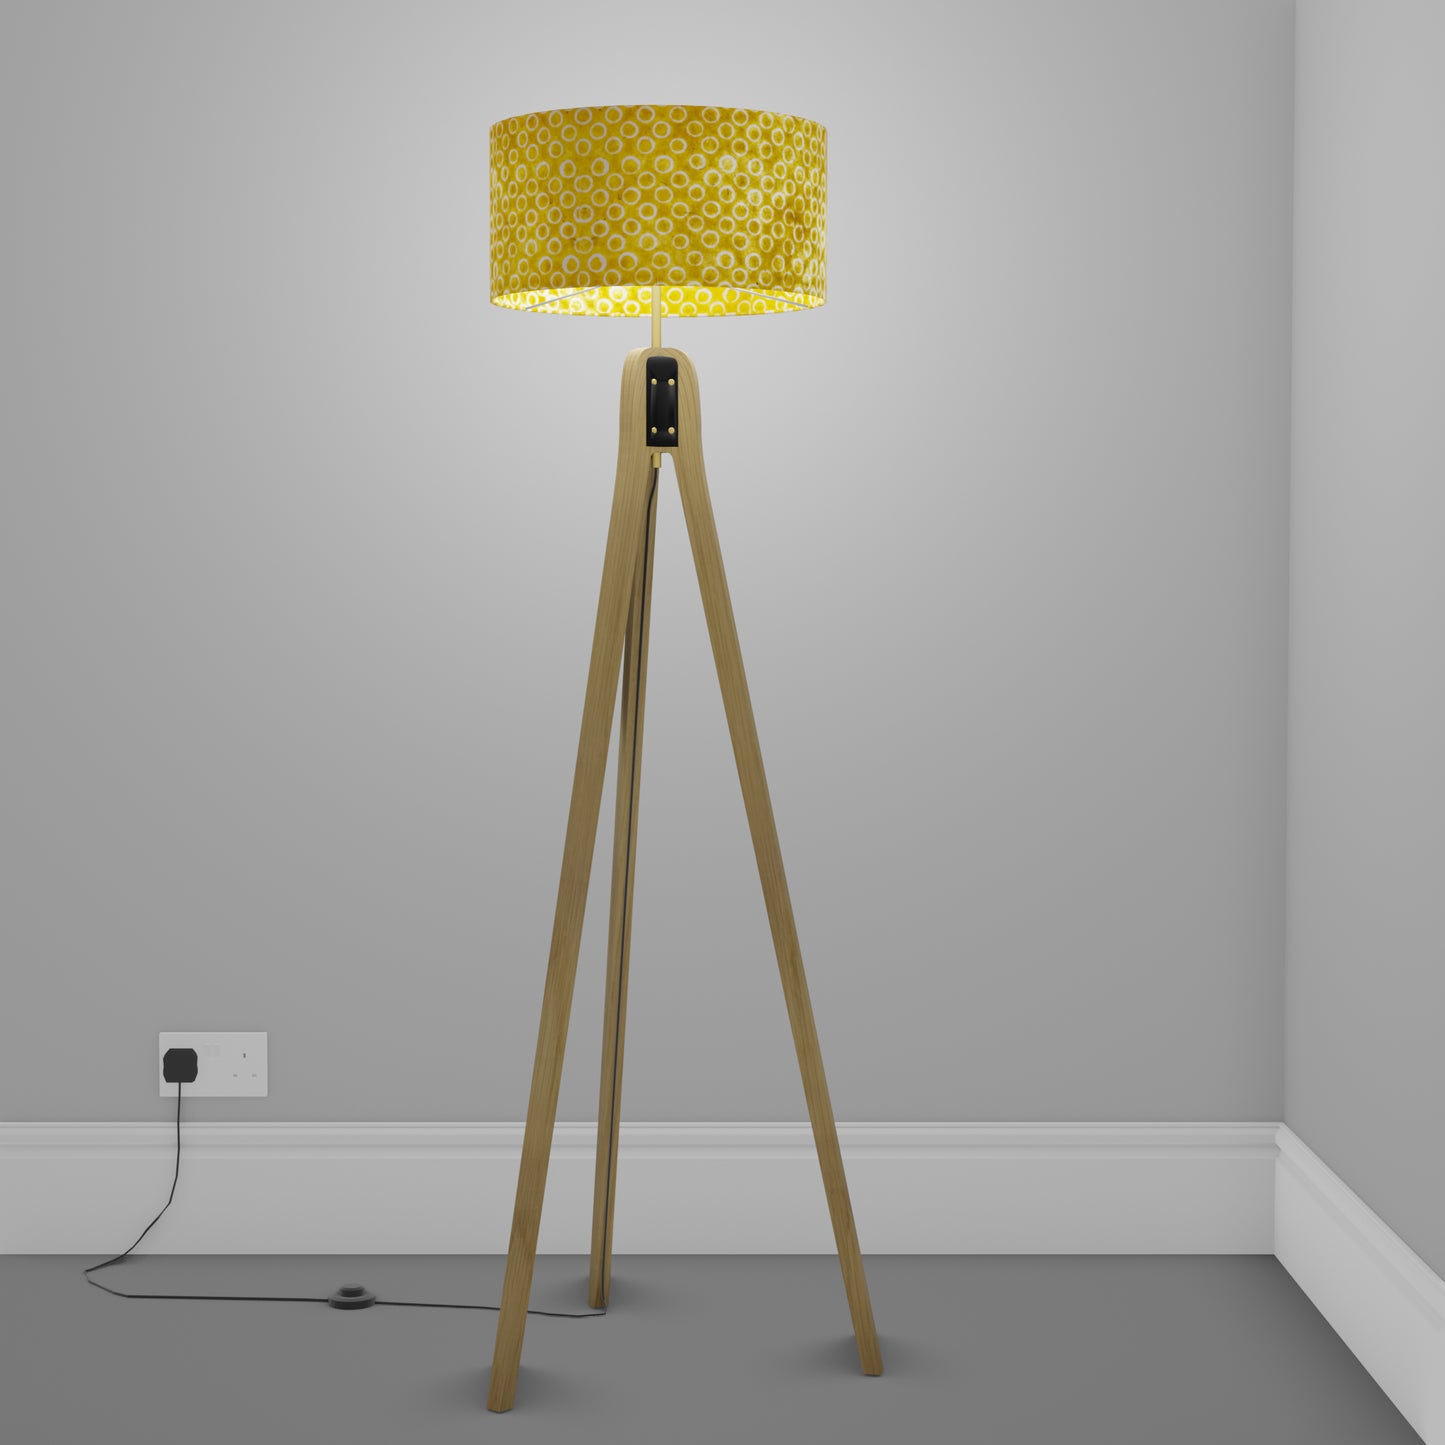 Oak Tripod Floor Lamp - P71 - Batik Yellow Circles